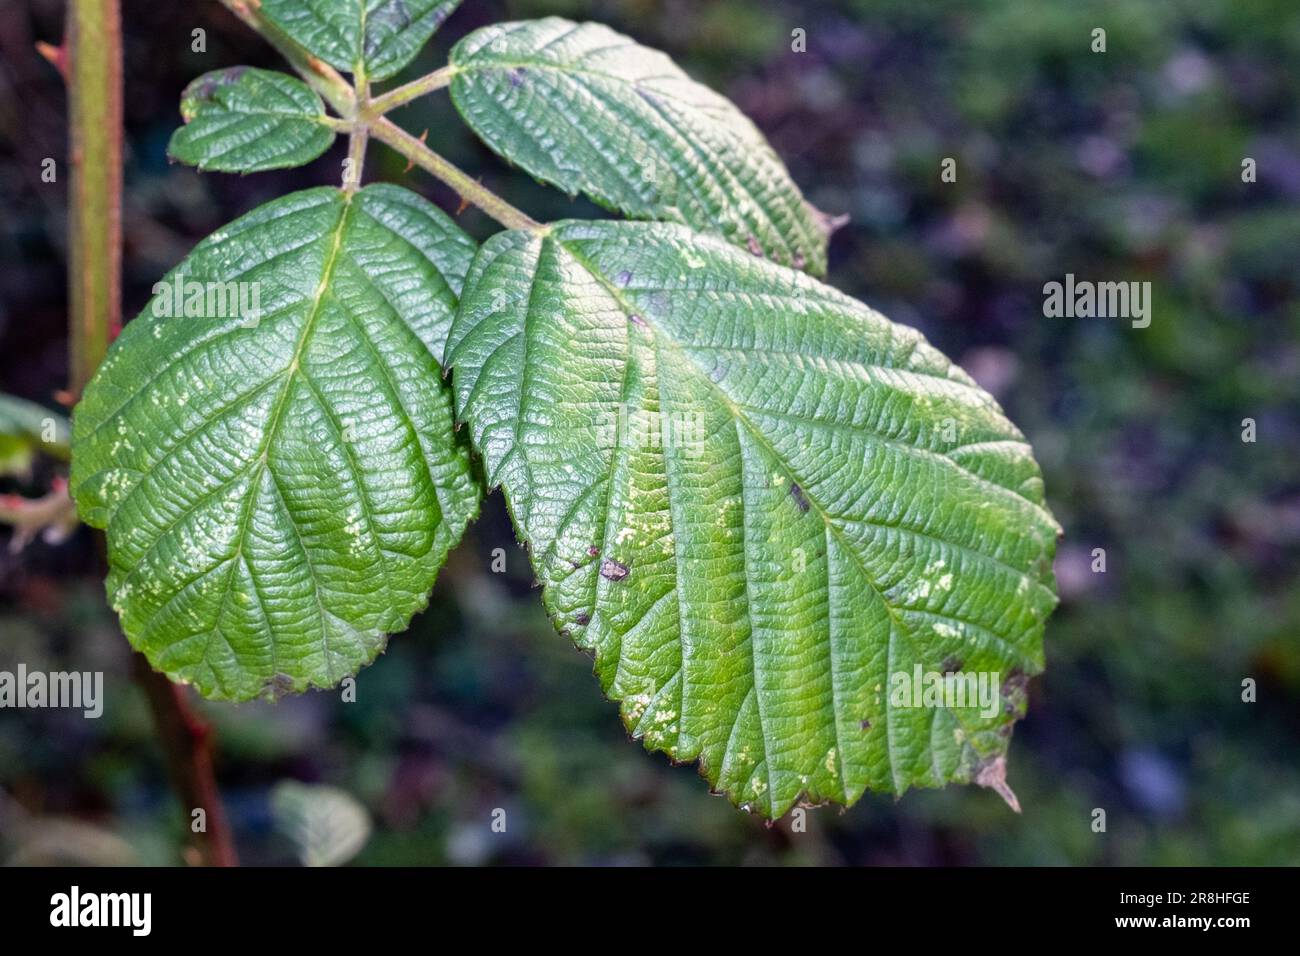 Eine lebhafte grüne Pflanze mit Tautropfen, die auf ihren üppigen Blättern vor einem natürlichen Hintergrund glitzern Stockfoto